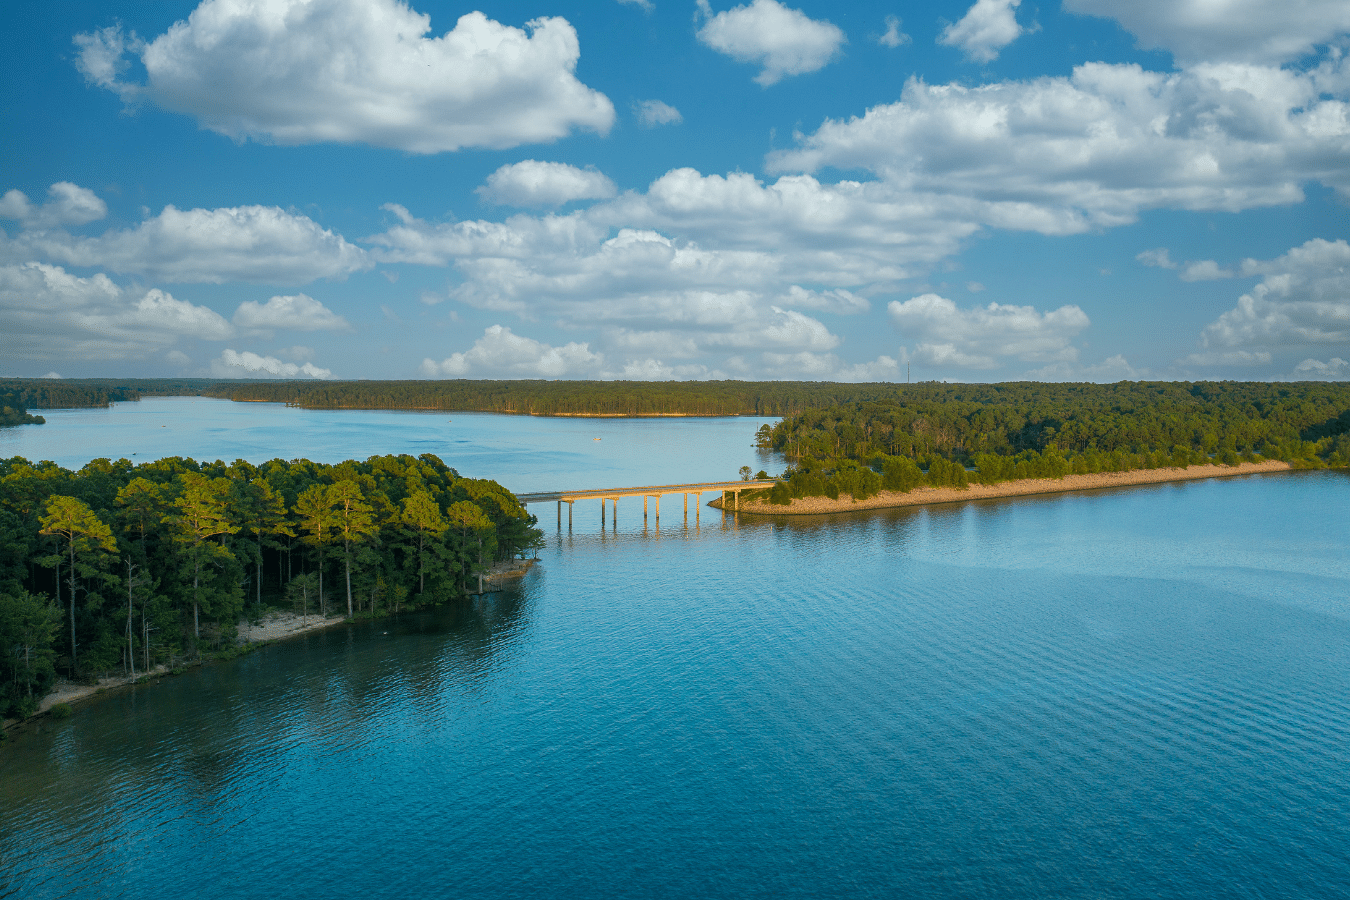 Jordan Lake in Apex, NC